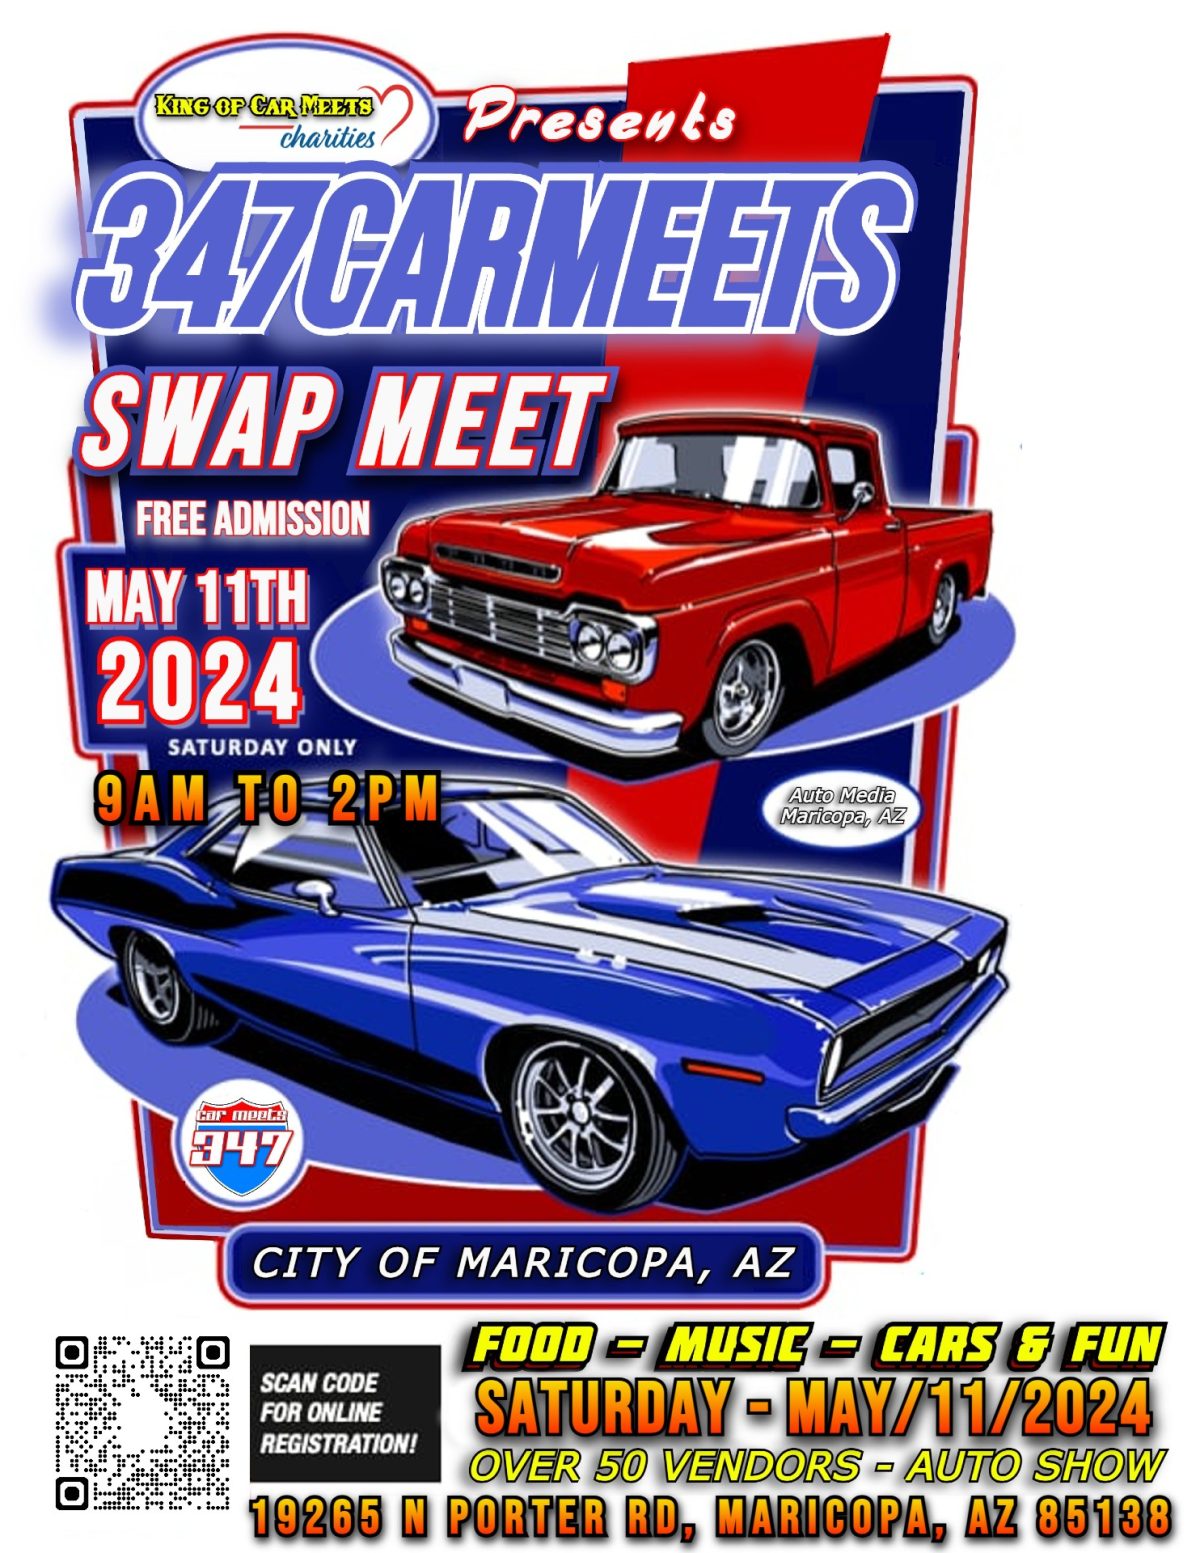 347 Car Meets Auto Show & Swap Meet